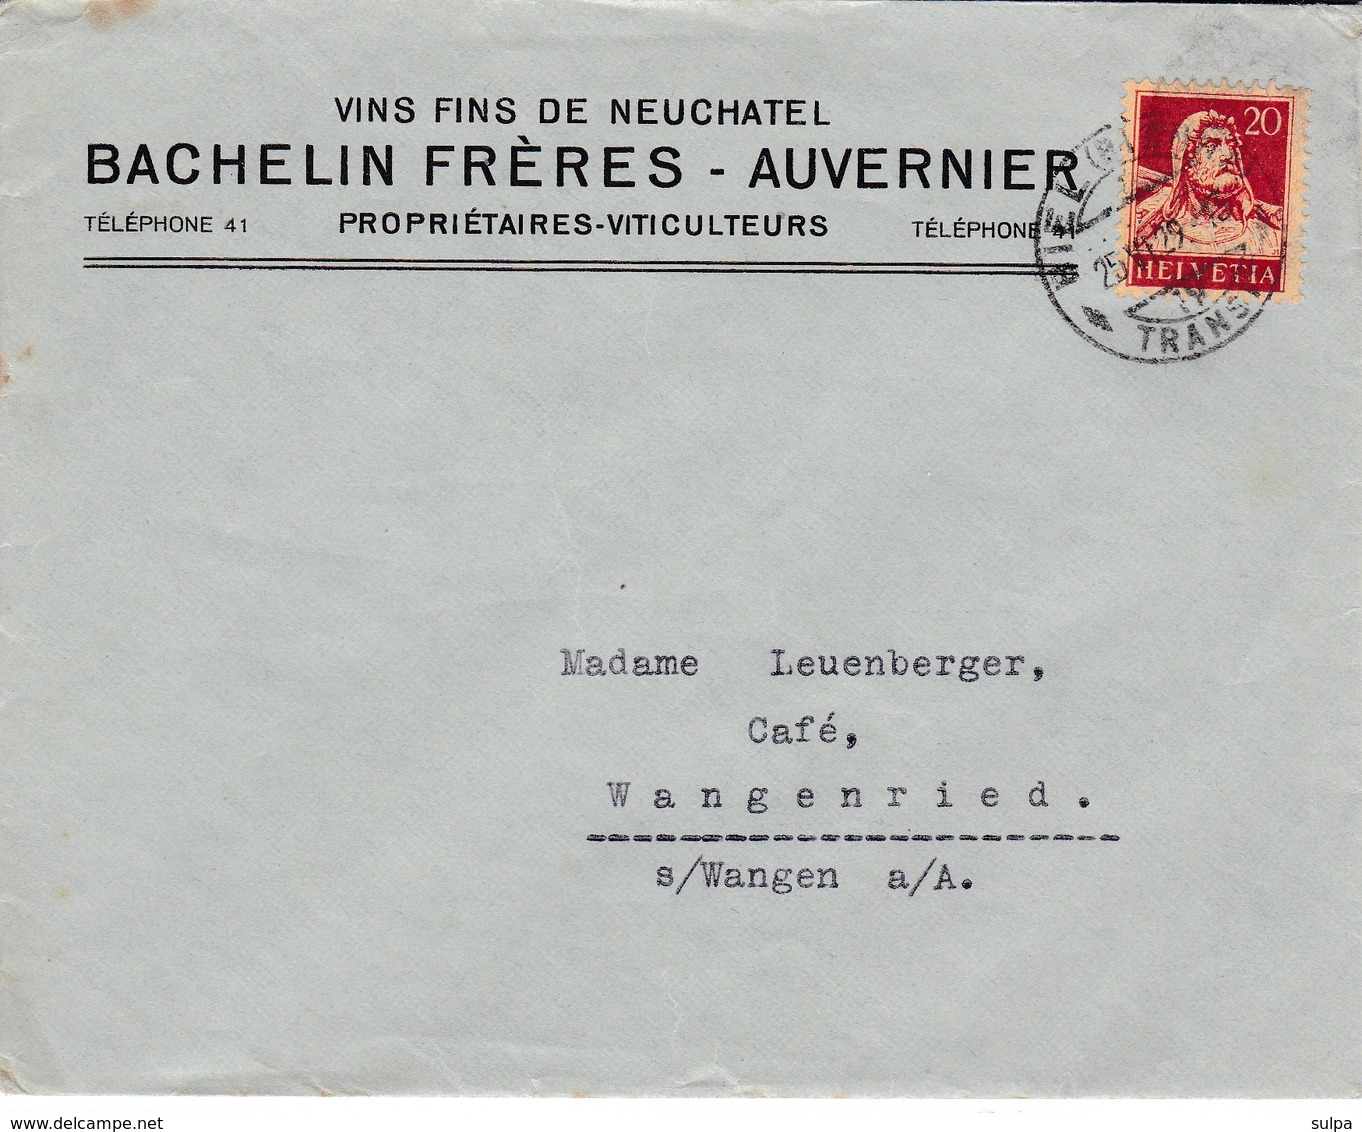 BACHELIN FRERES - AUVERNIER, VINS FINS DE NEUCHÂTEL 1929 Lettre Commerciale - Vins & Alcools